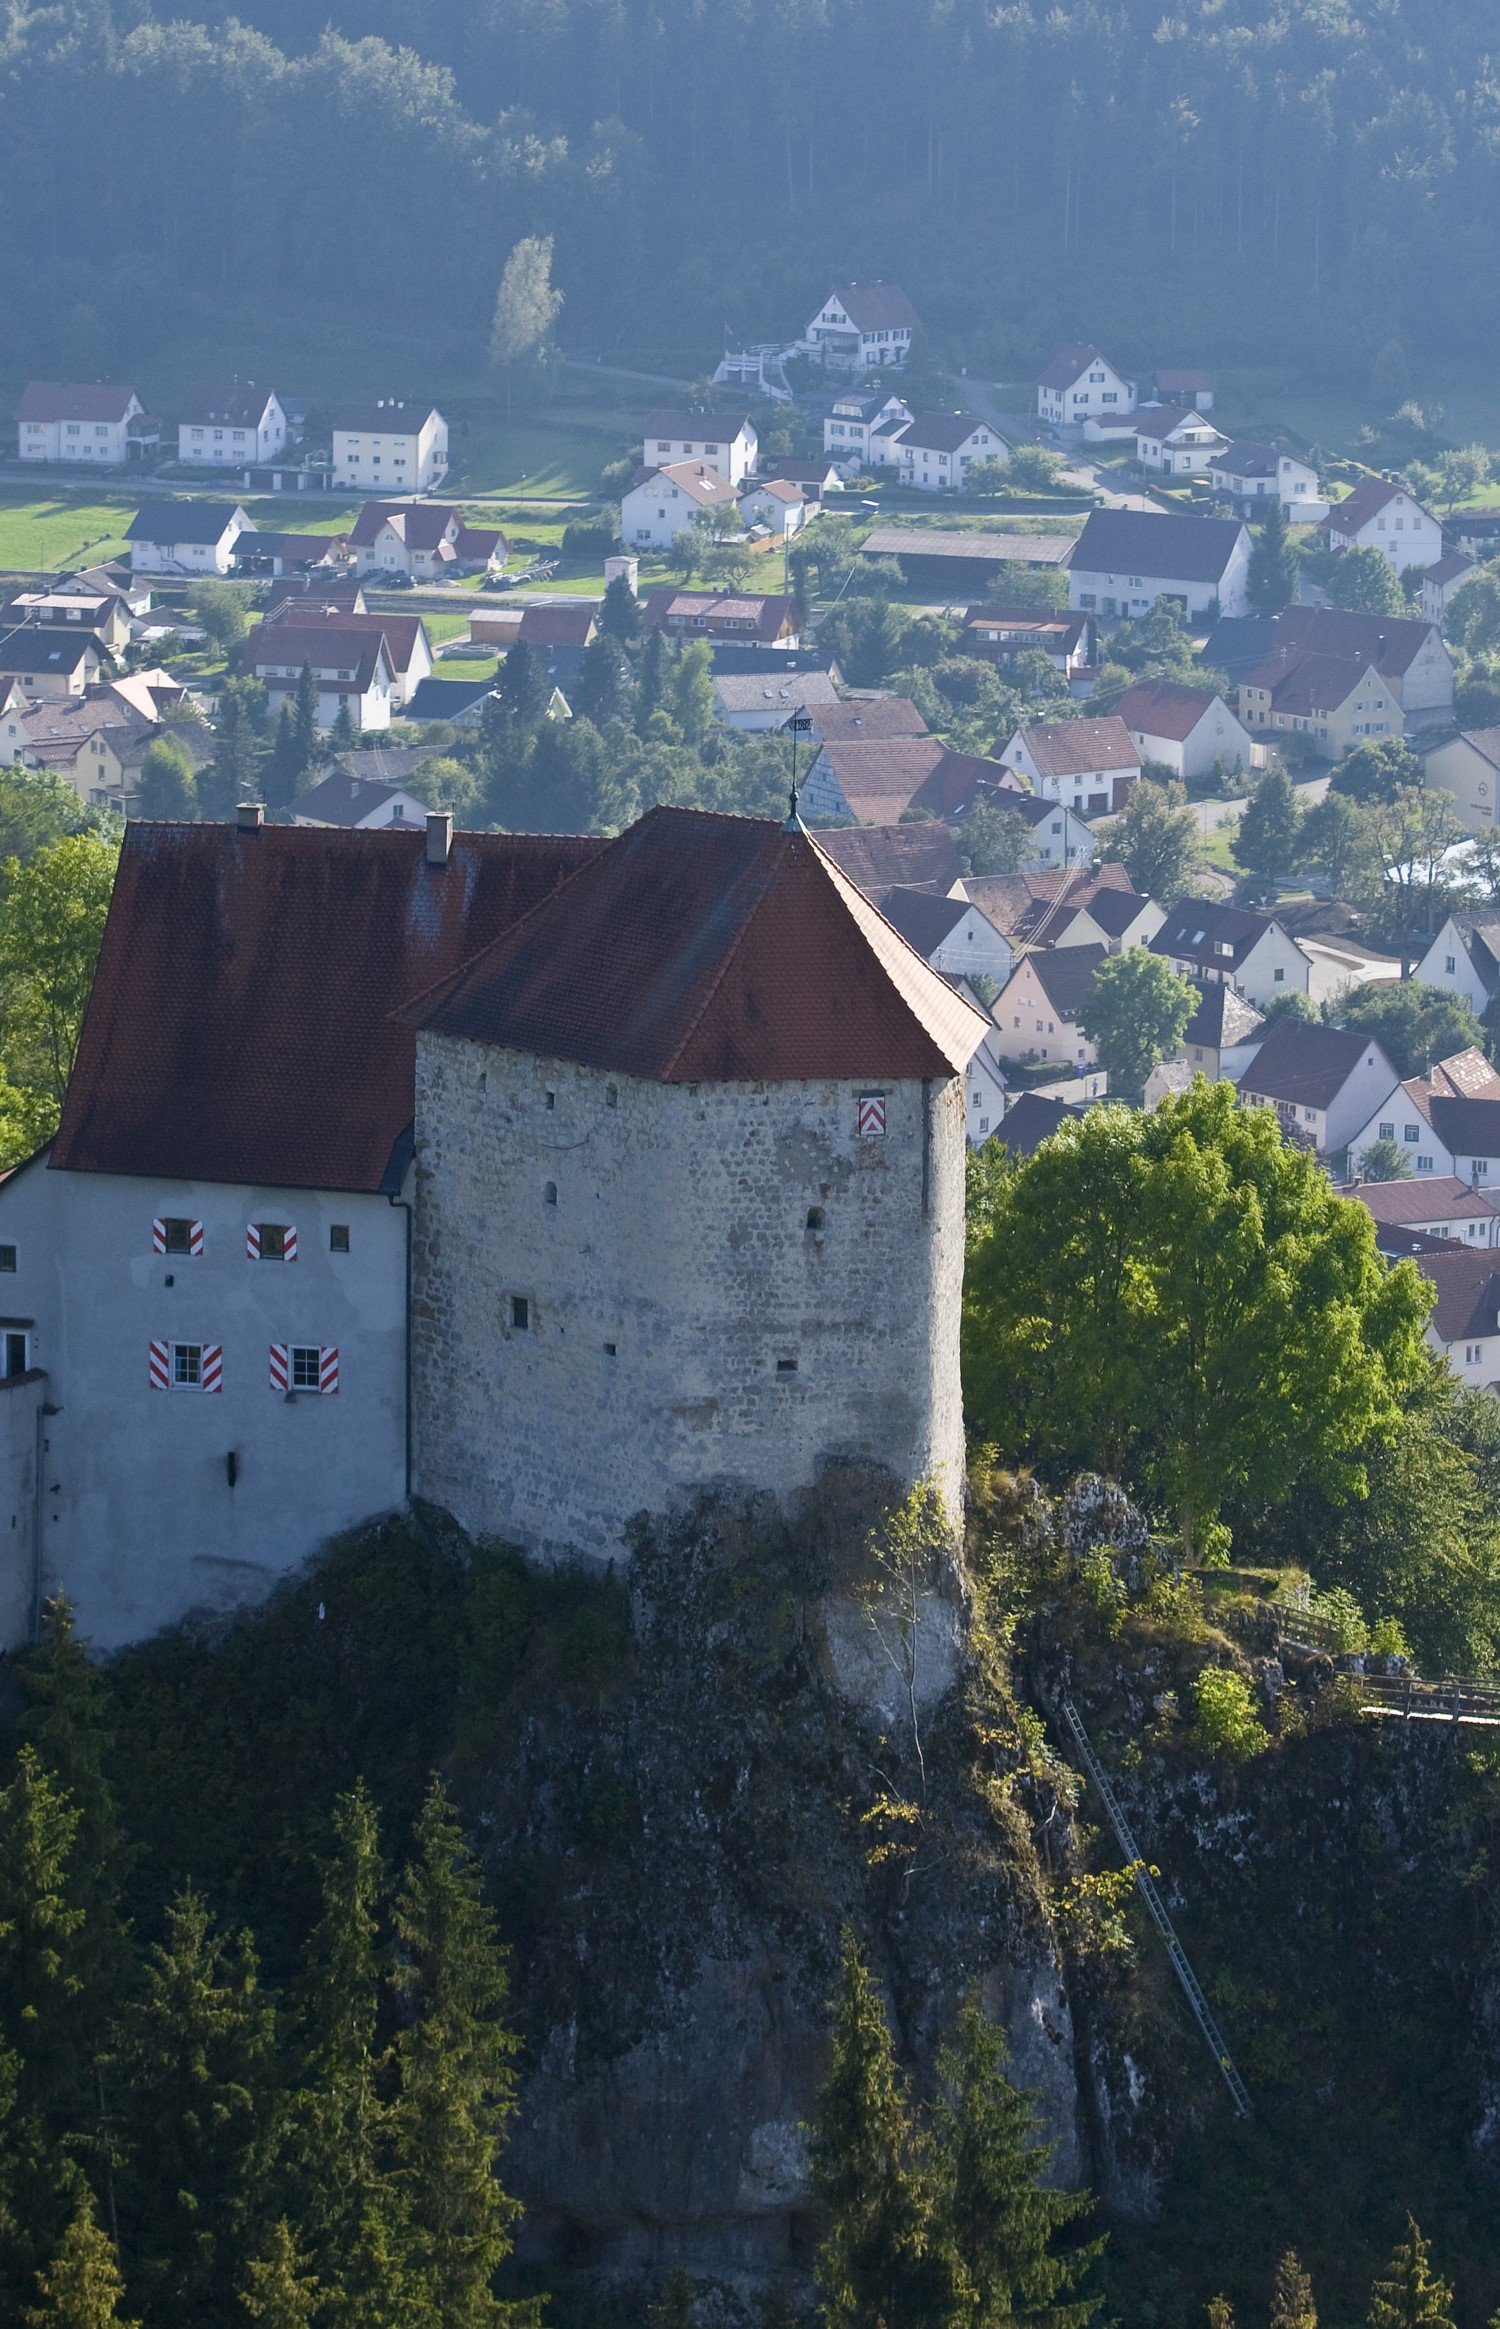 Blick auf die Burg Straßberg auf einer Anhöhe und das Dorf im Tal